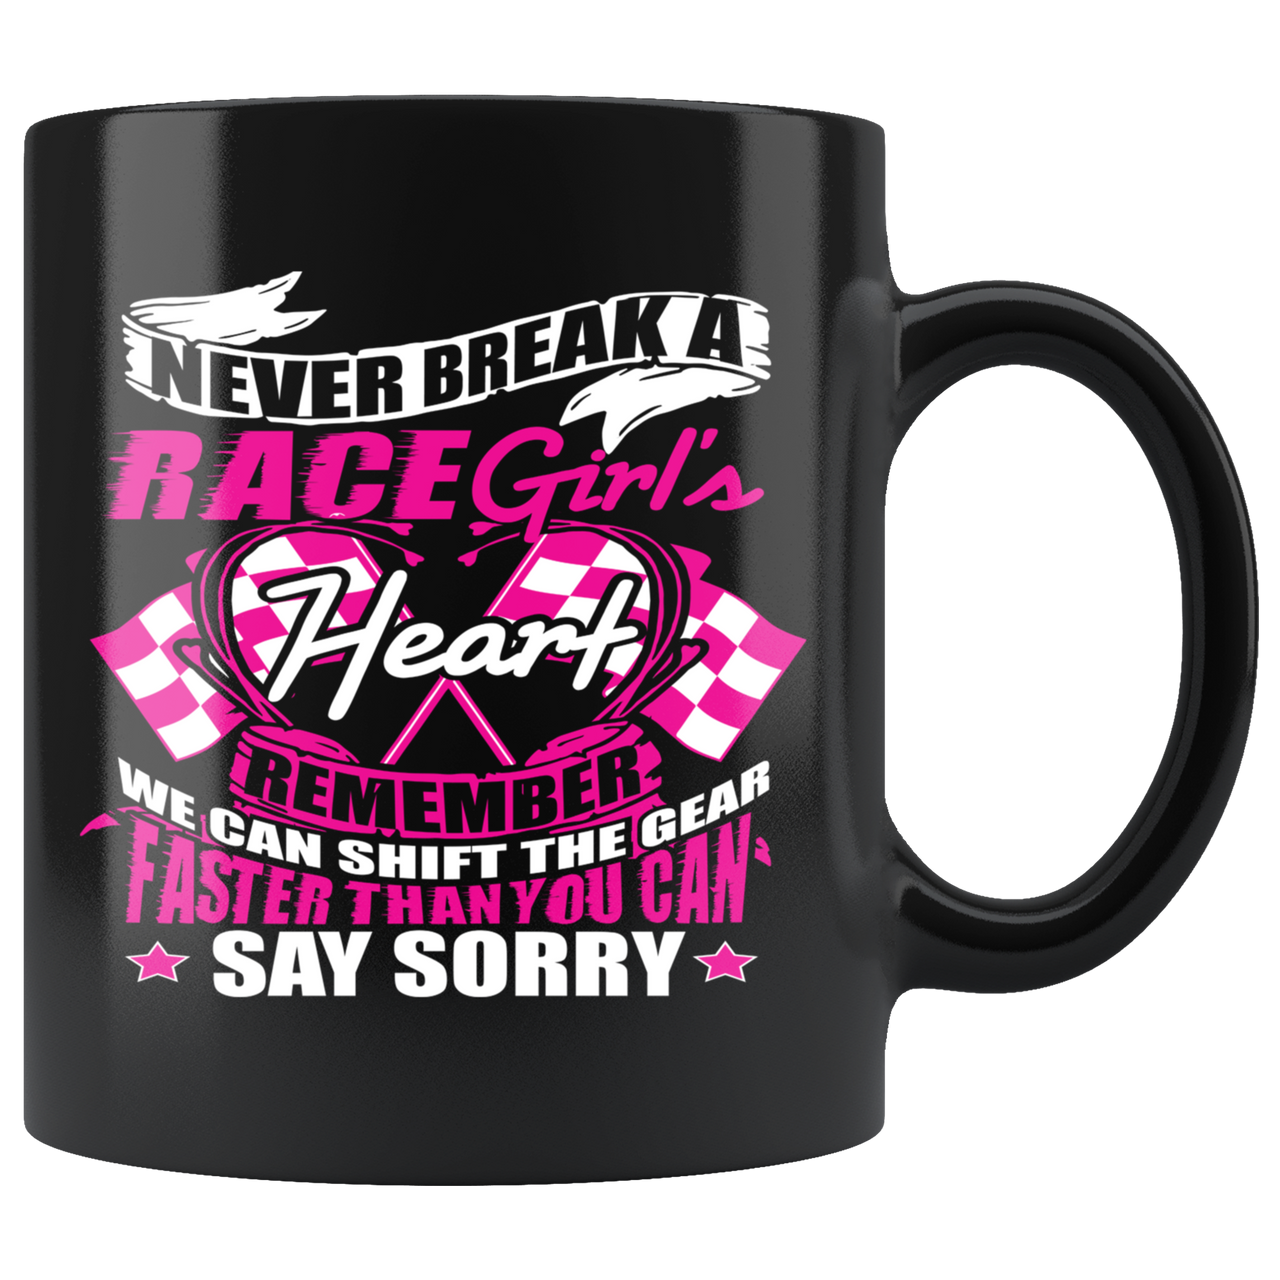 Never Break A Race Girl's Heart Mug!